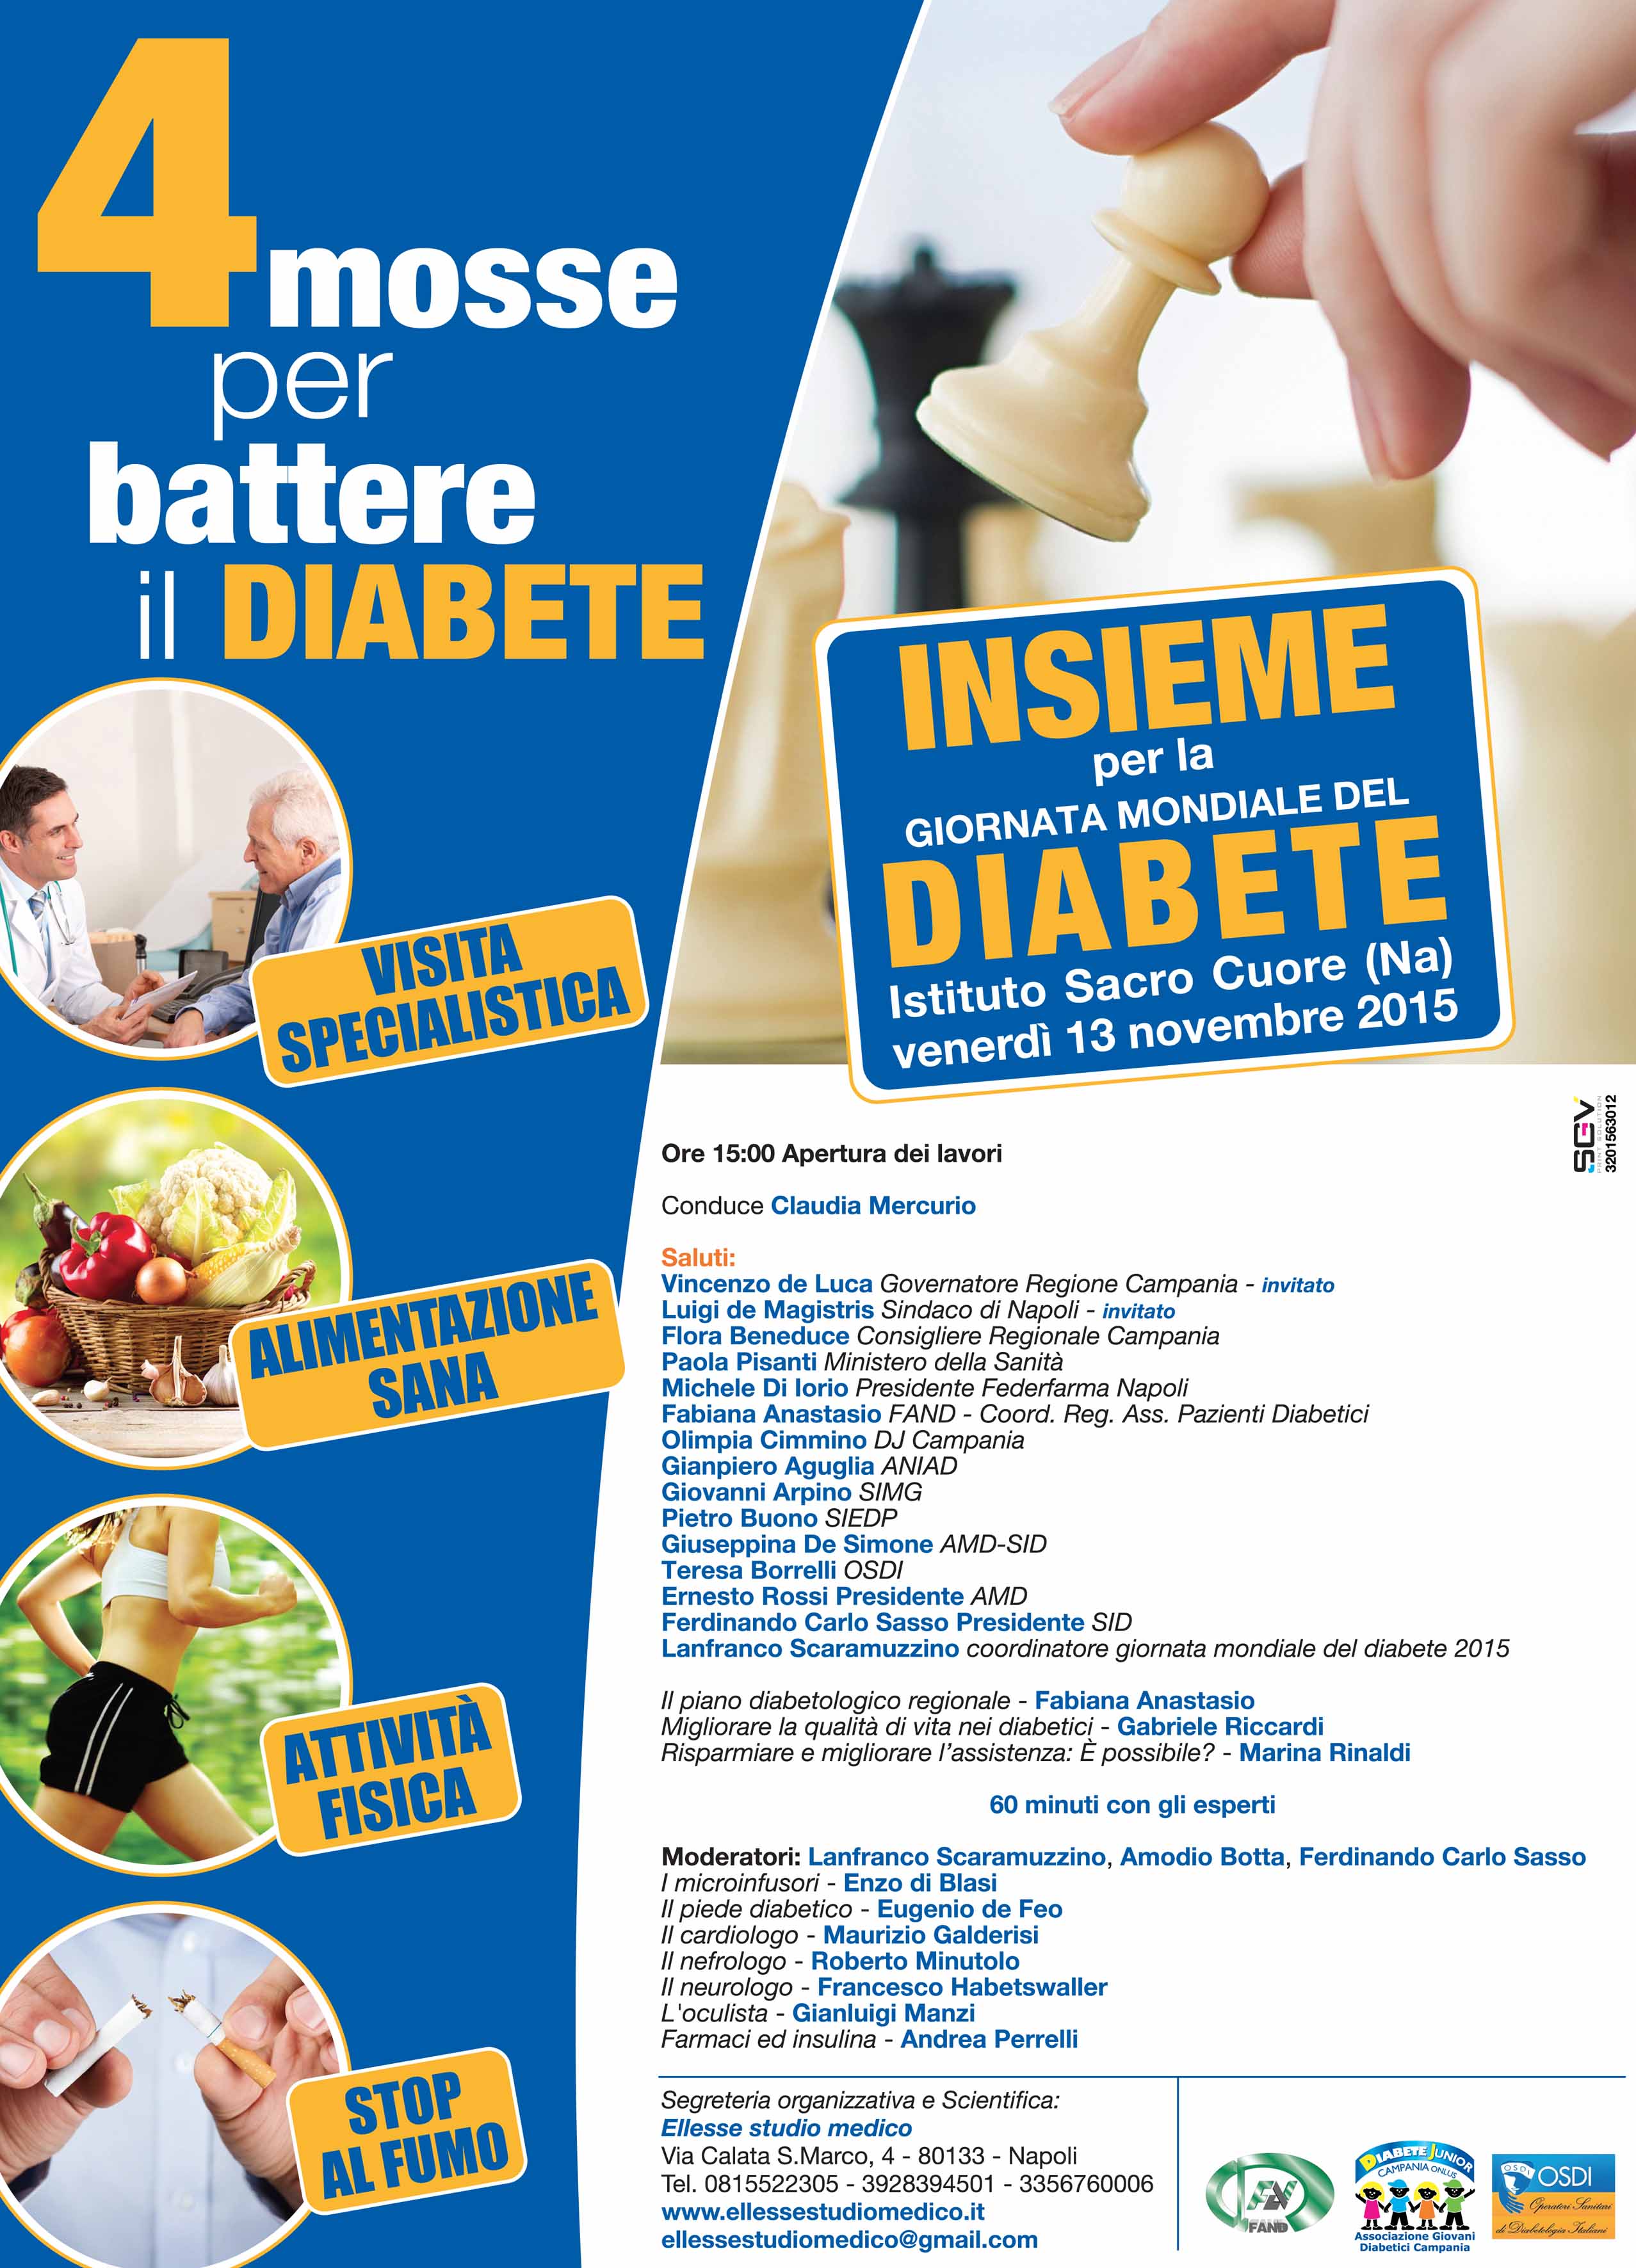  Napoli, incontro dibattito sulla giornata mondiale del diabete